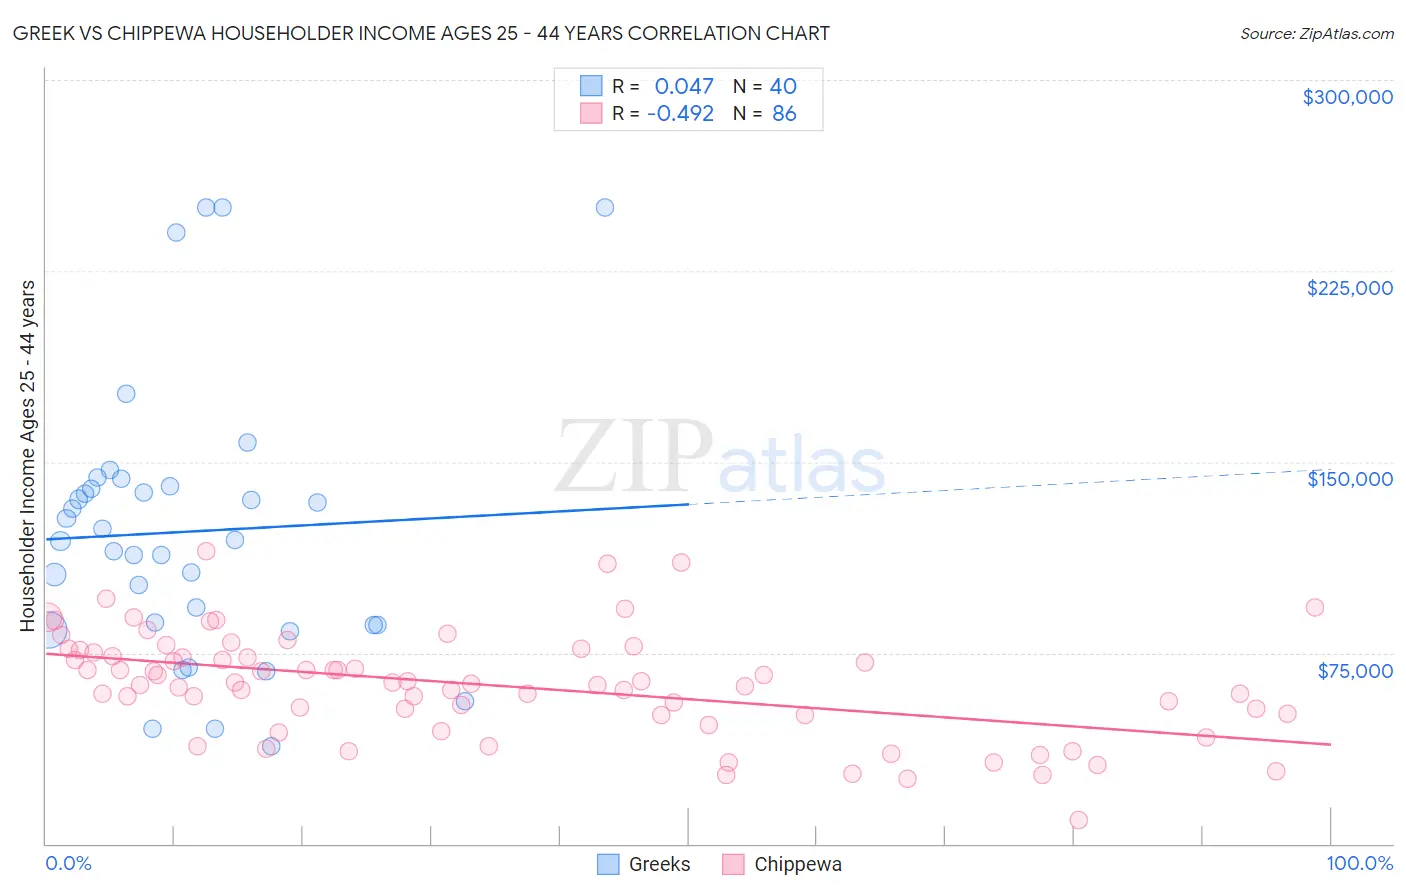 Greek vs Chippewa Householder Income Ages 25 - 44 years